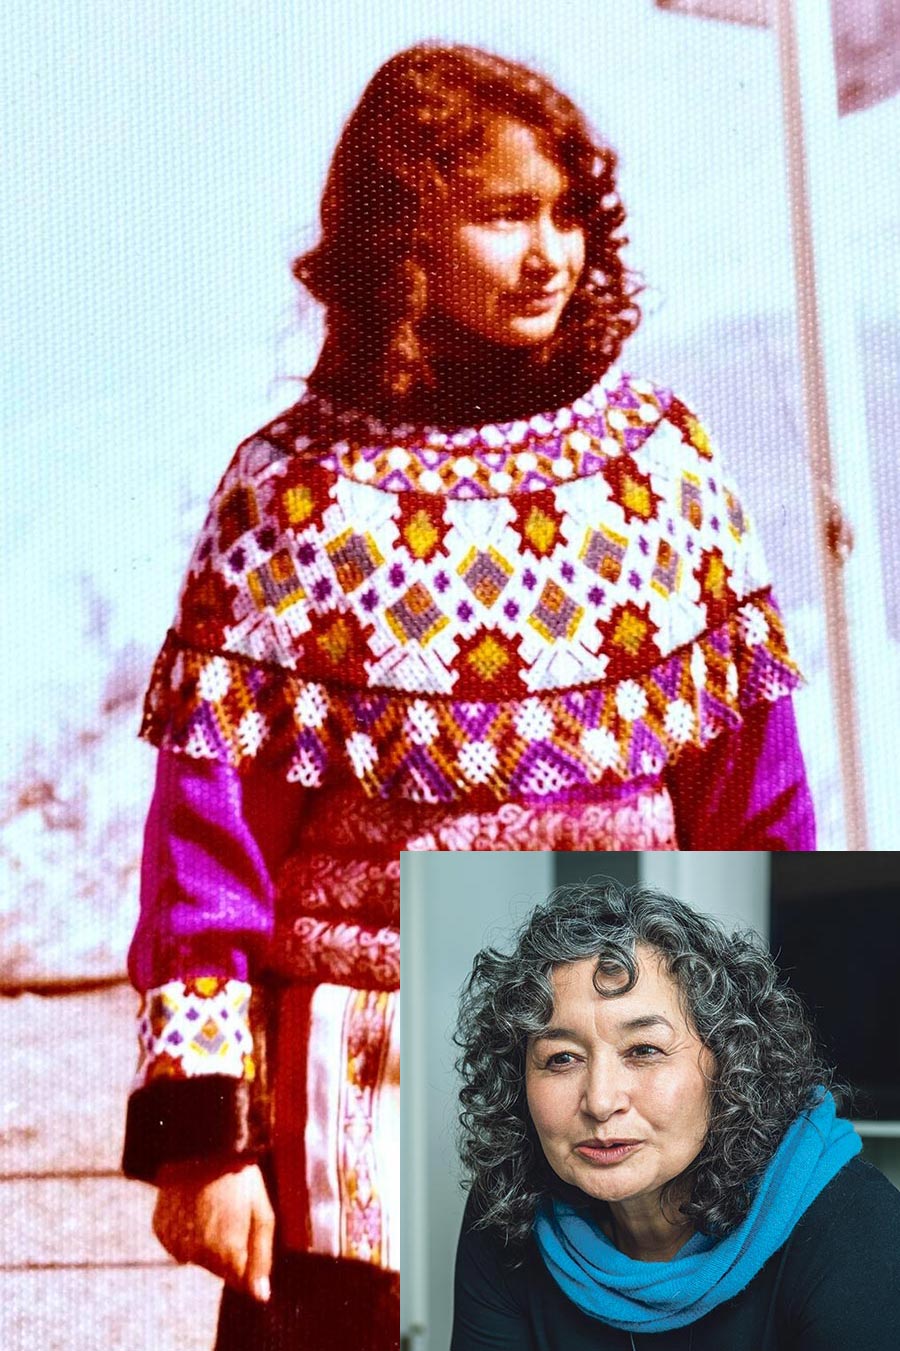 Naja Lyberth quand elle avait 14 ans, en habits traditionnels groenlandais, et Naja aujourd'hui.